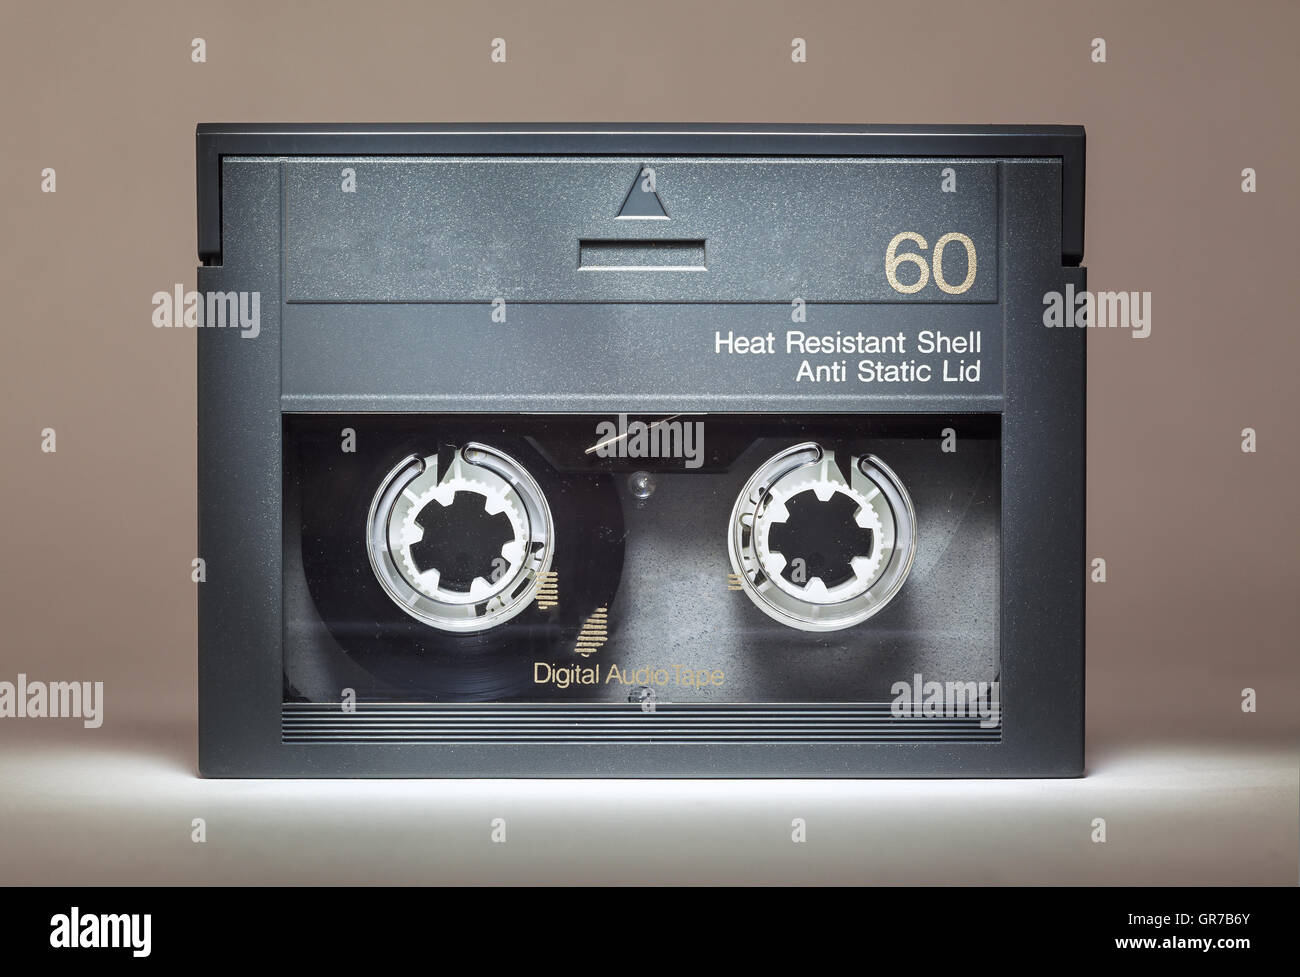 Einzelheiten über eine alte staubige digitale audio-Kassette, Retro-Technologie aus den 90er Jahren. Stockfoto